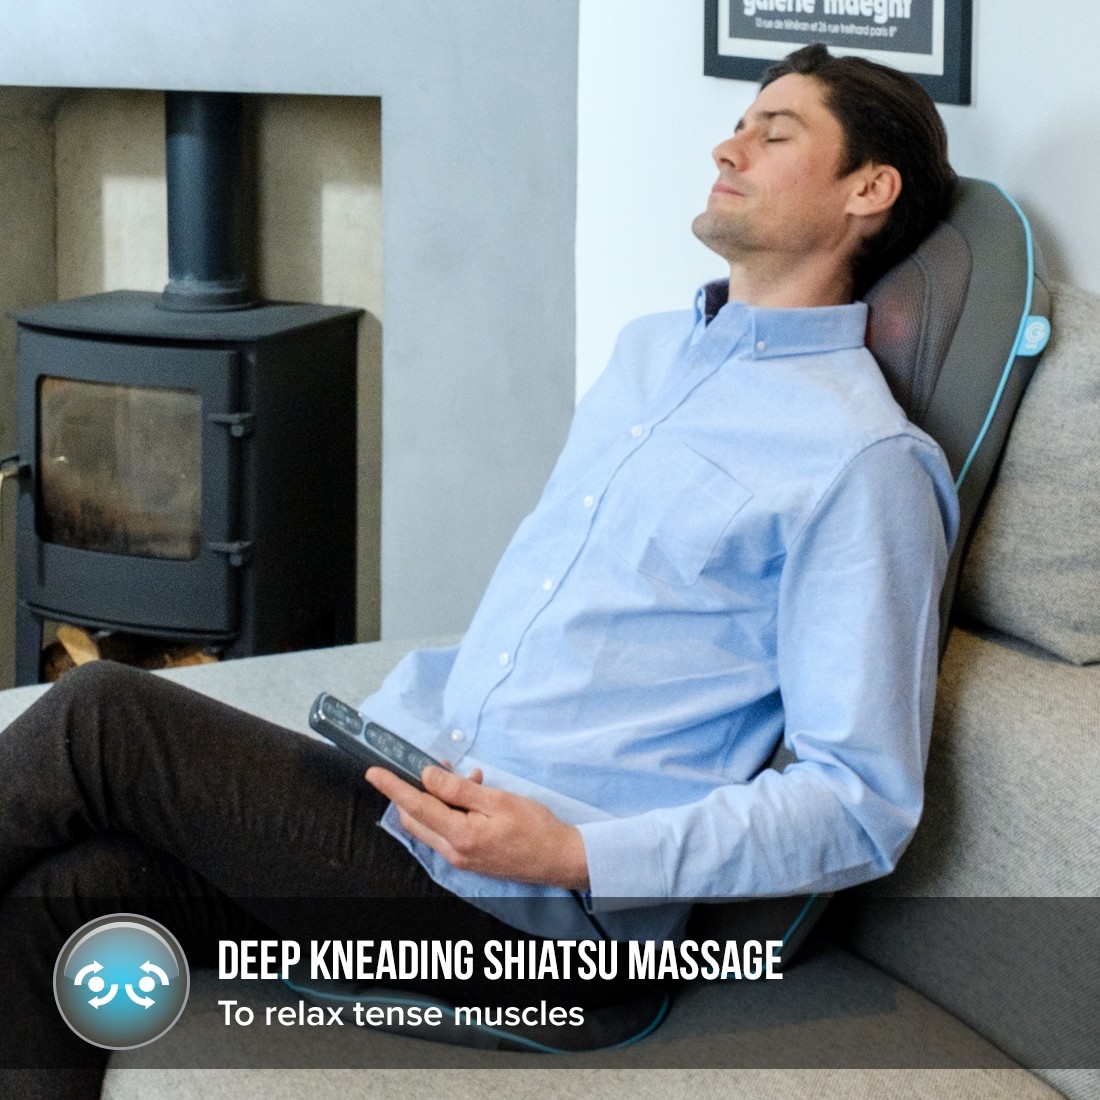 Đệm massaga đem lại cảm giác thư giãn thoải mái 